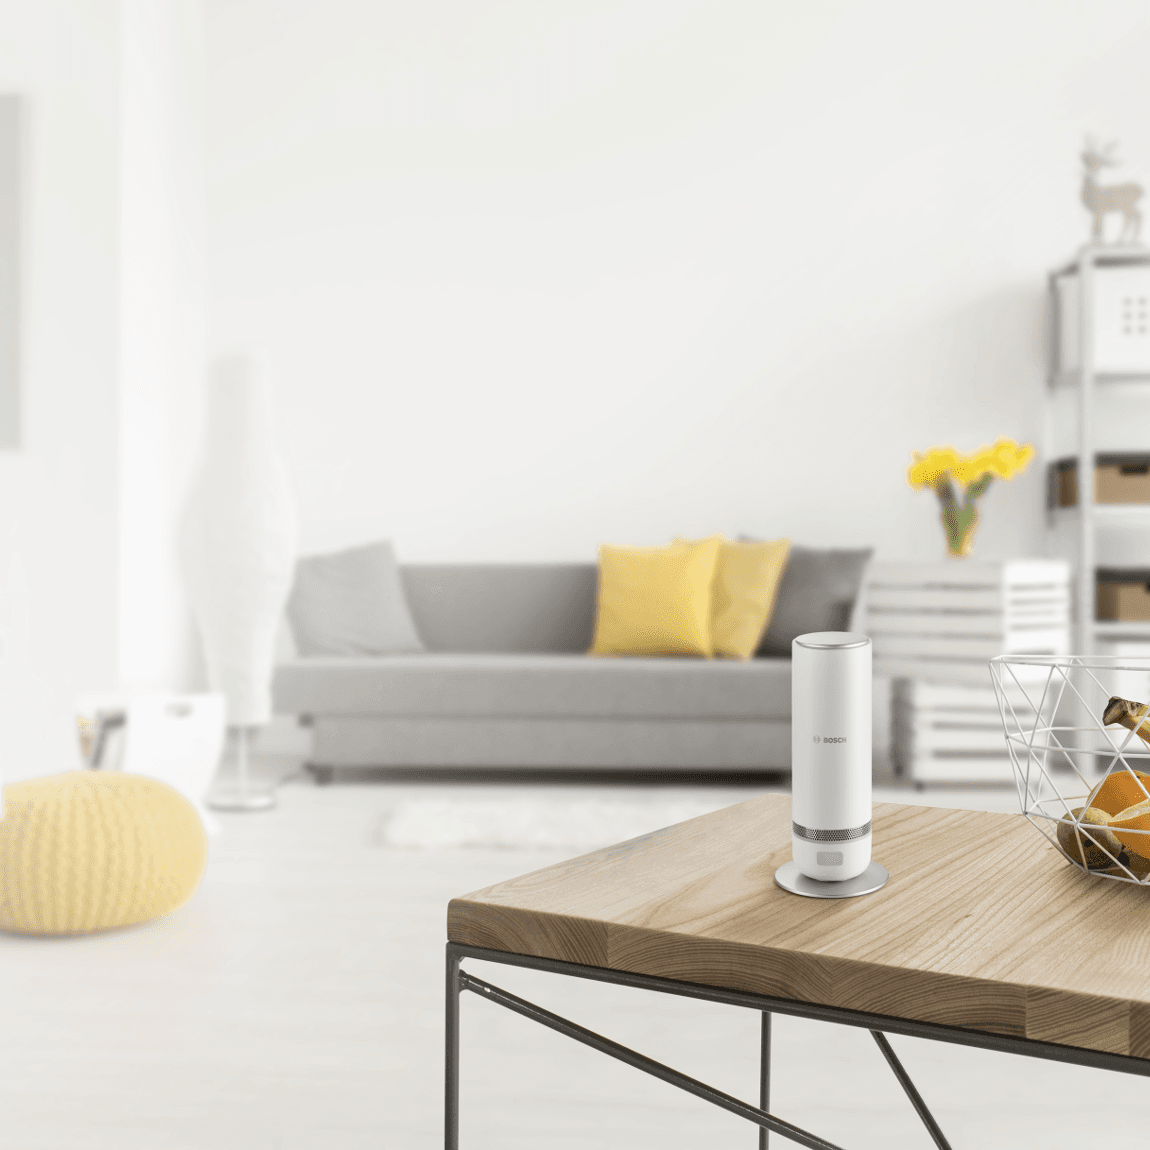 Bosch Smart Home 360° Innenkamera im Wohnzimmer